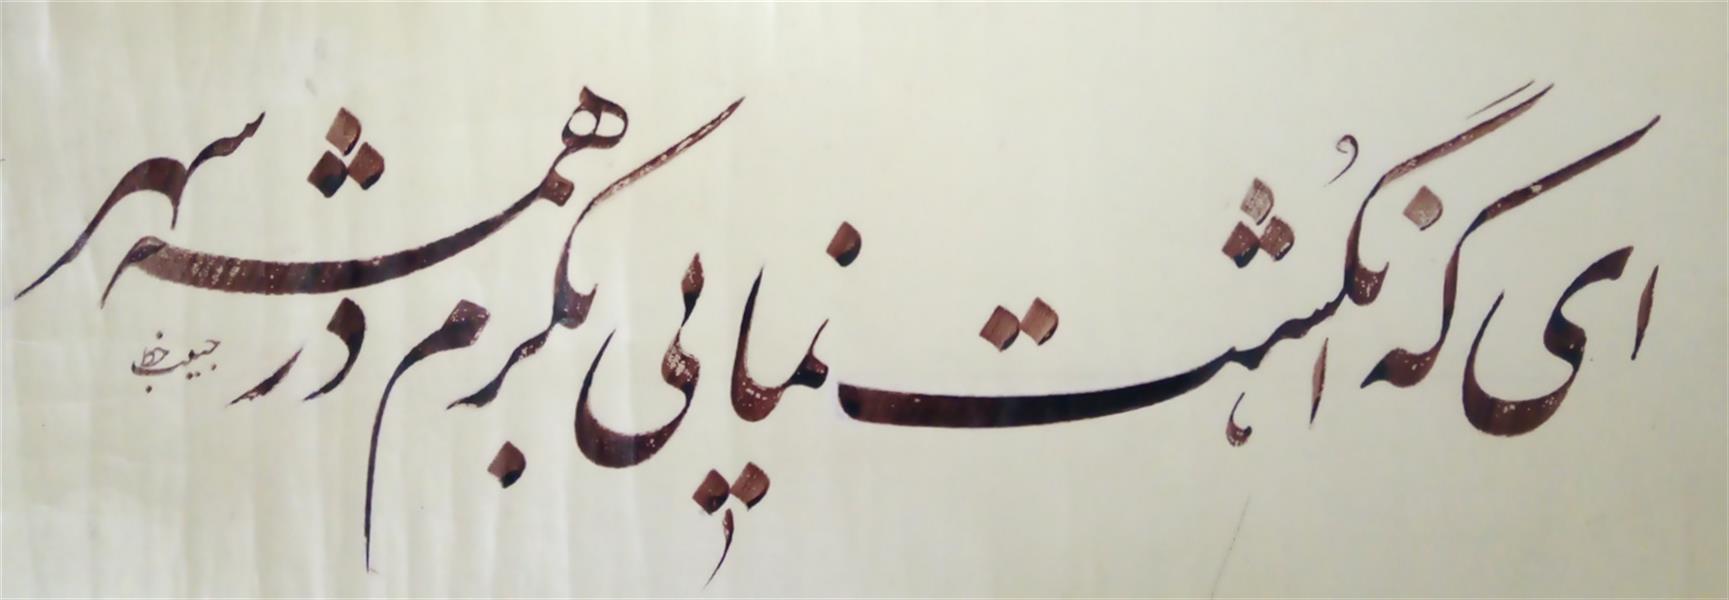 هنر خوشنویسی محفل خوشنویسی (Hghgallery (Habib Qanbari ای کع انگشت نمایی بکرم در همه شهر
خوشنویسی حبیب قنبری
1399
مرکب ترکیبی و کاغذ اهارمهره و قلم 6 میلیمتر